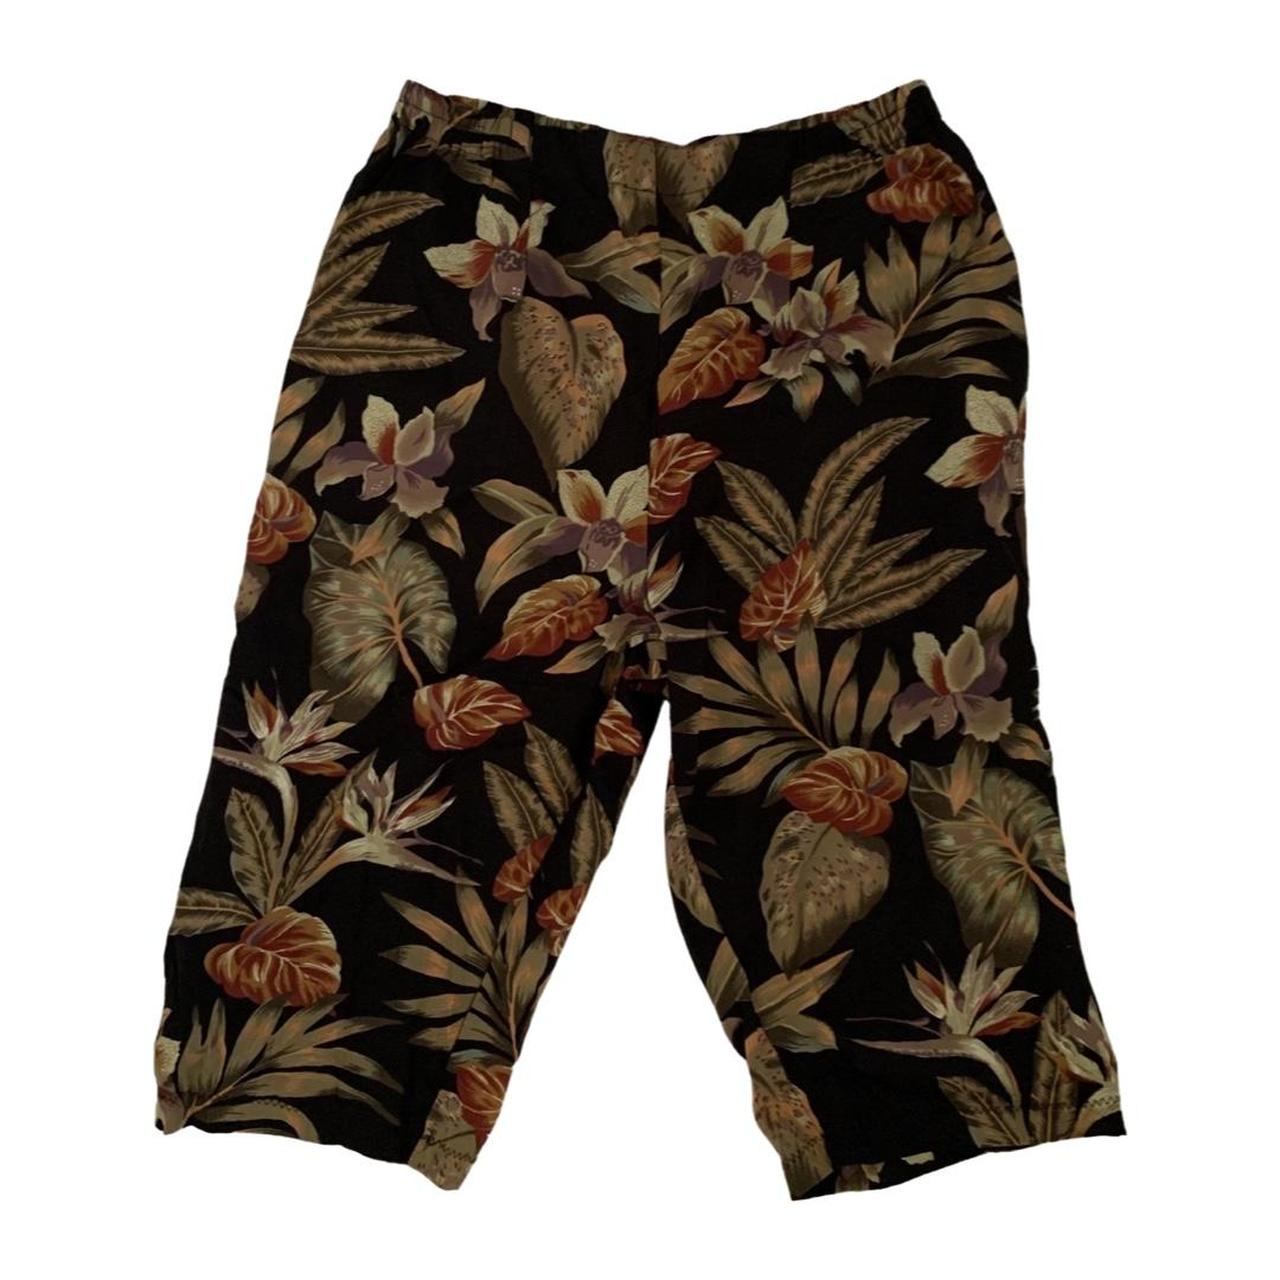 Product Image 3 - Vintage Faith Flower Shorts

Size: no